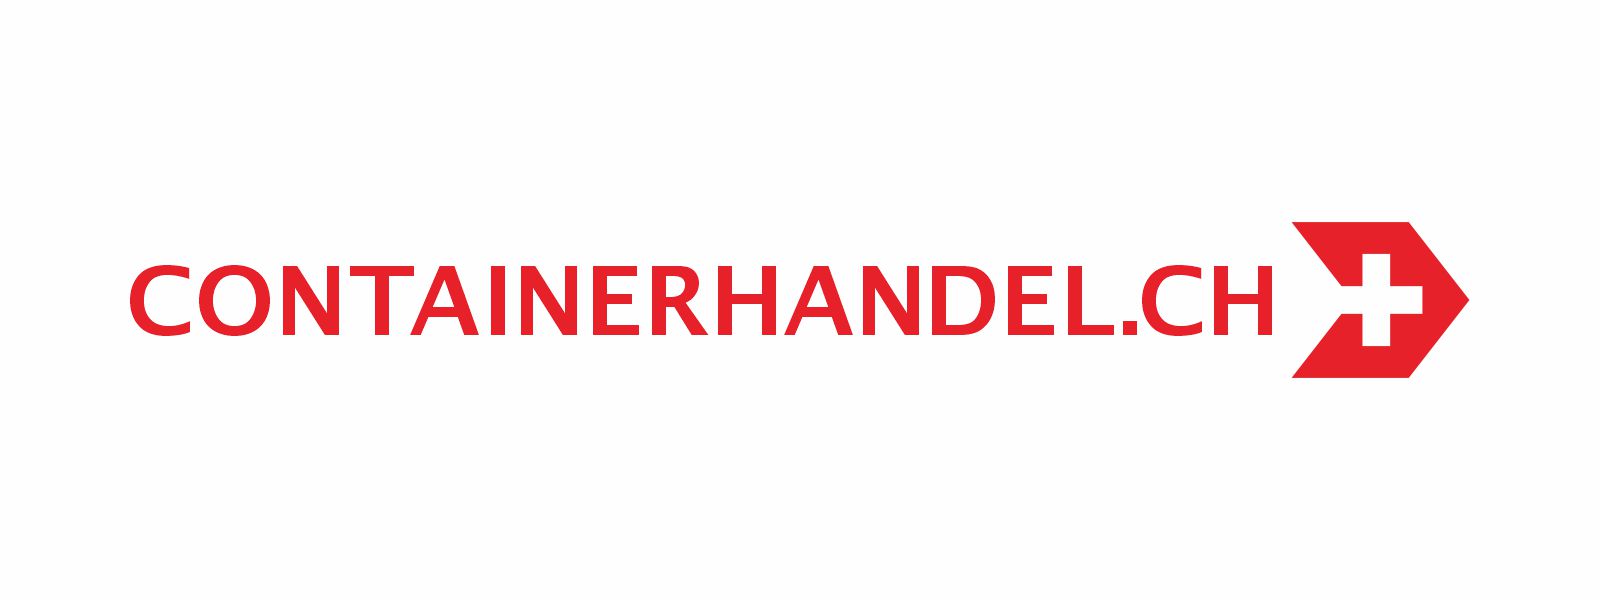 containerhandel.ch logo